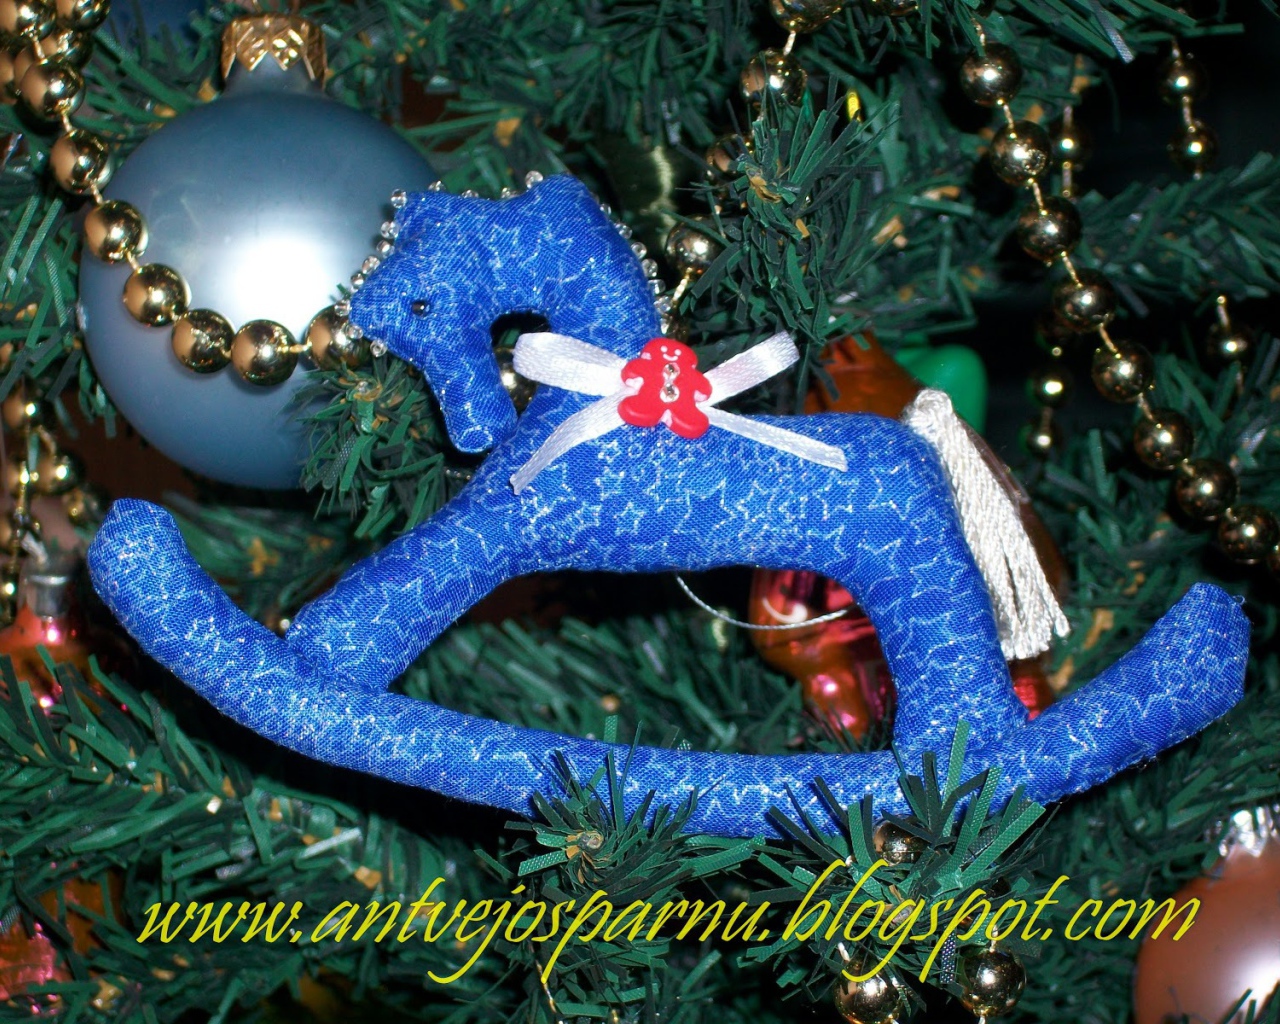 Christmas toy rocking horse